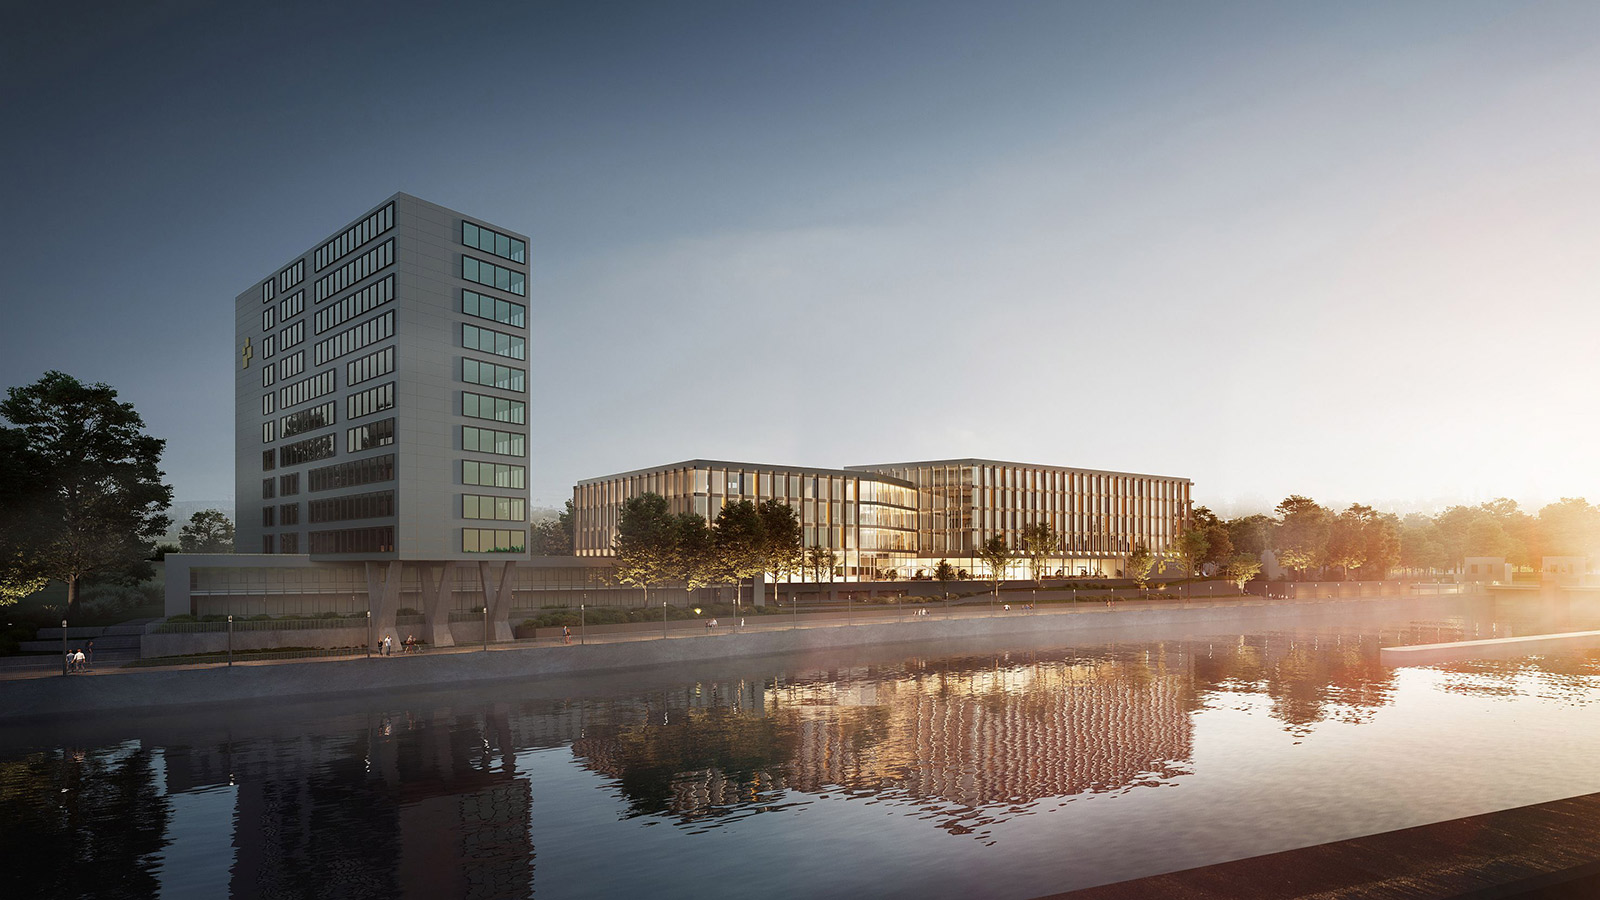 Visualisierung des Neubaus Landratsamt Esslingen - Sicht von der Neckarseite